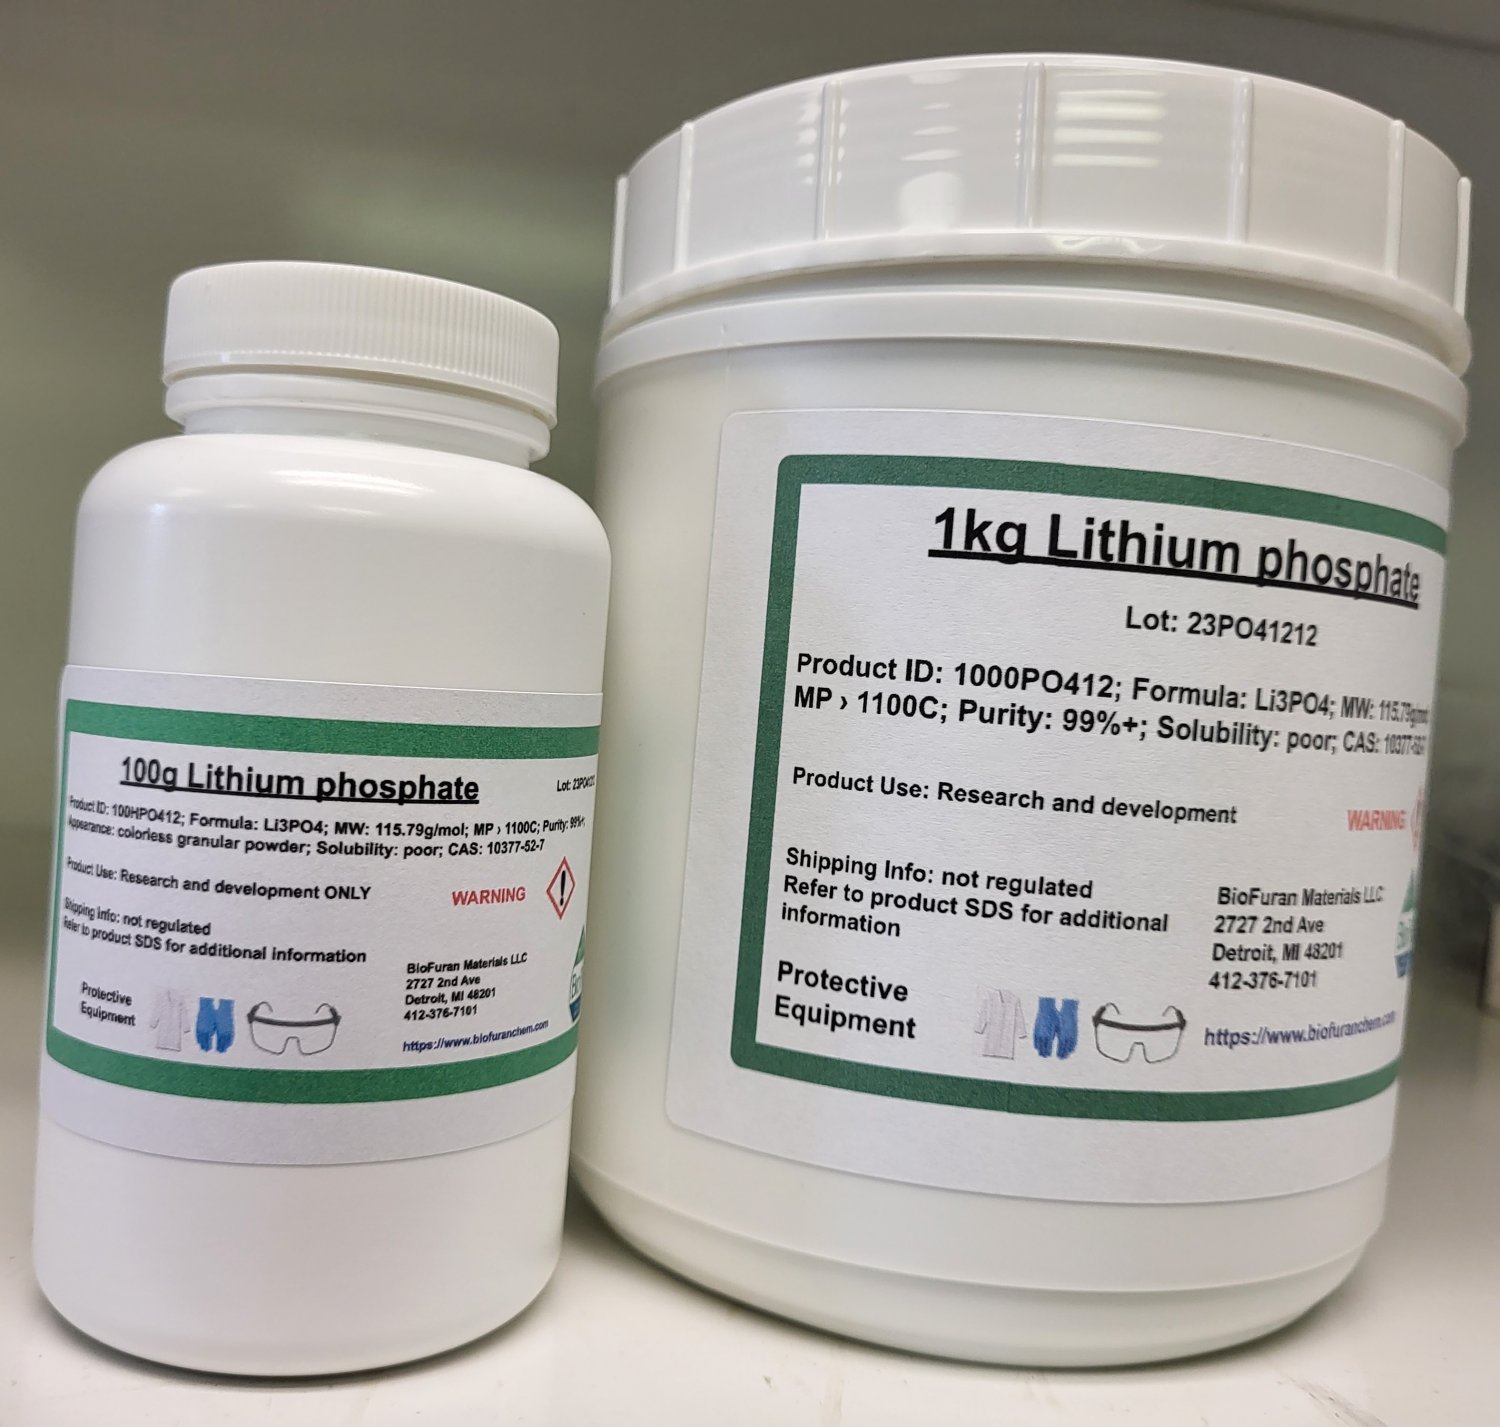 100g Lithium phosphate